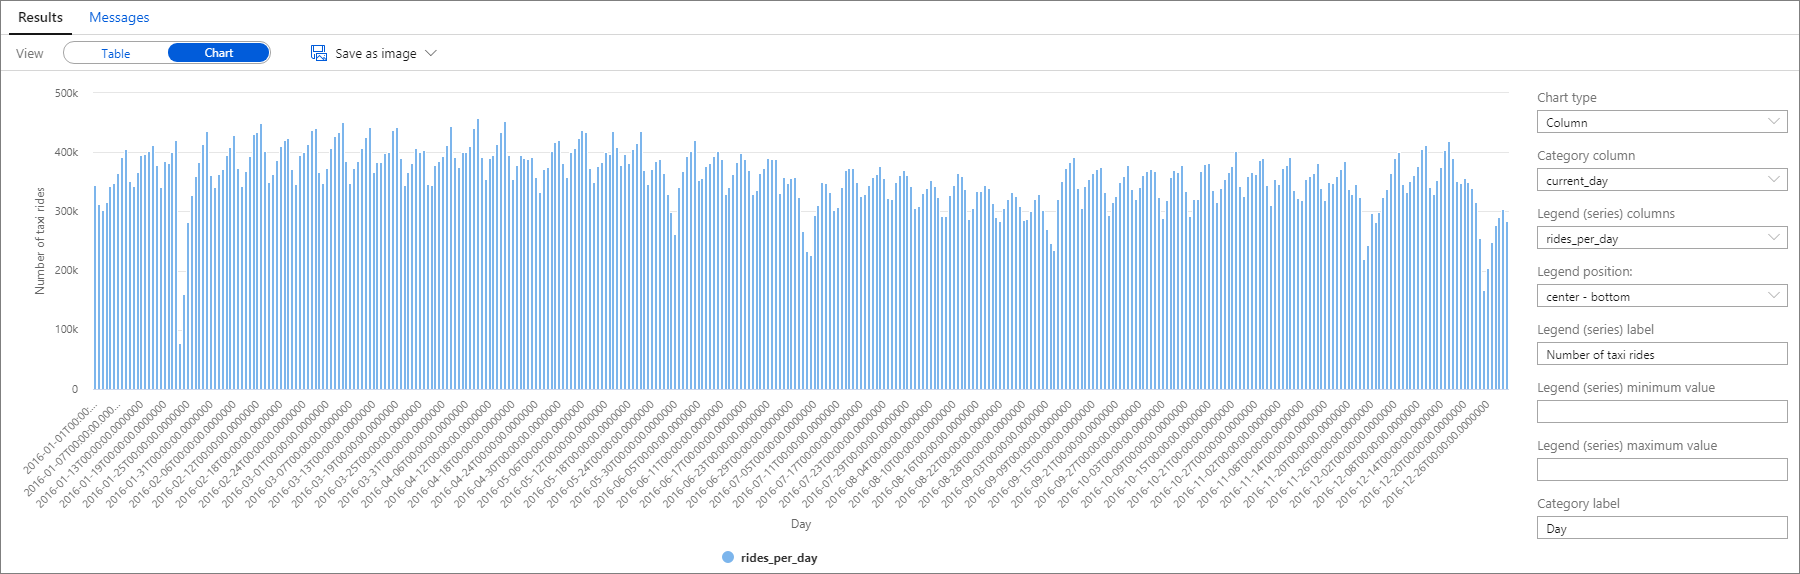 スクリーンショットは、2016 年の 1 日あたりの乗車数を表す縦棒グラフを示しています。